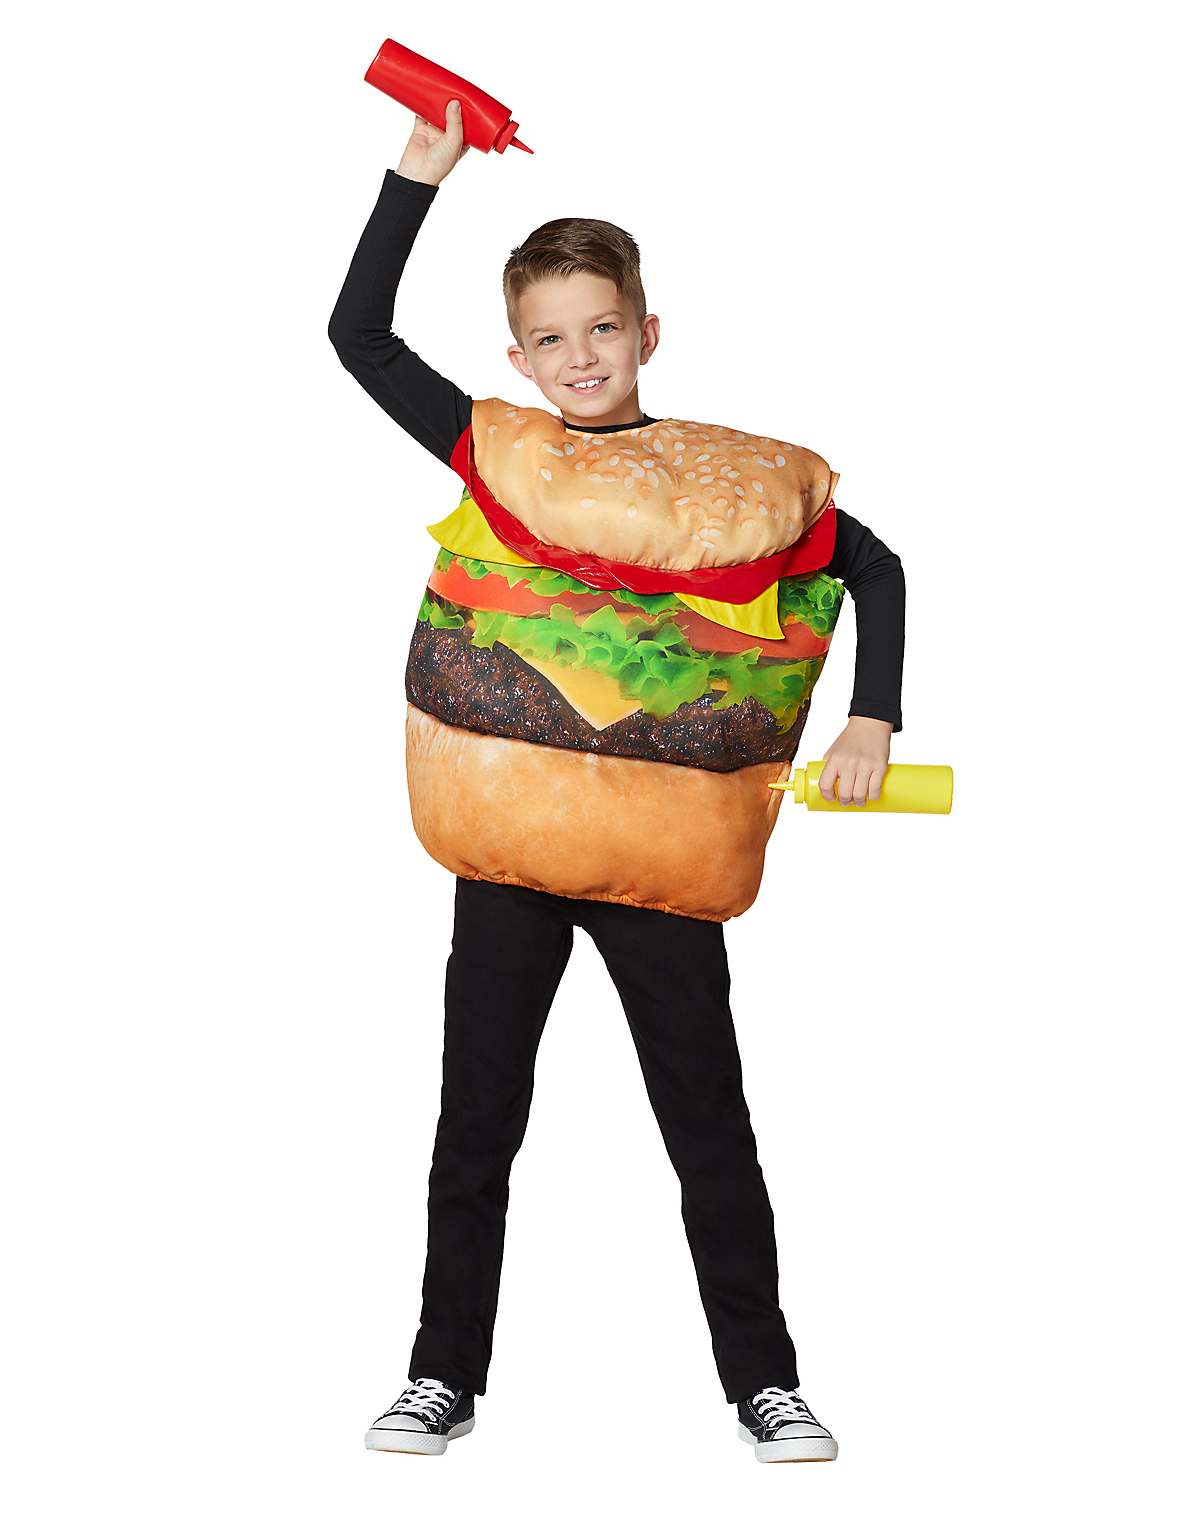 Kids cheeseburger costume